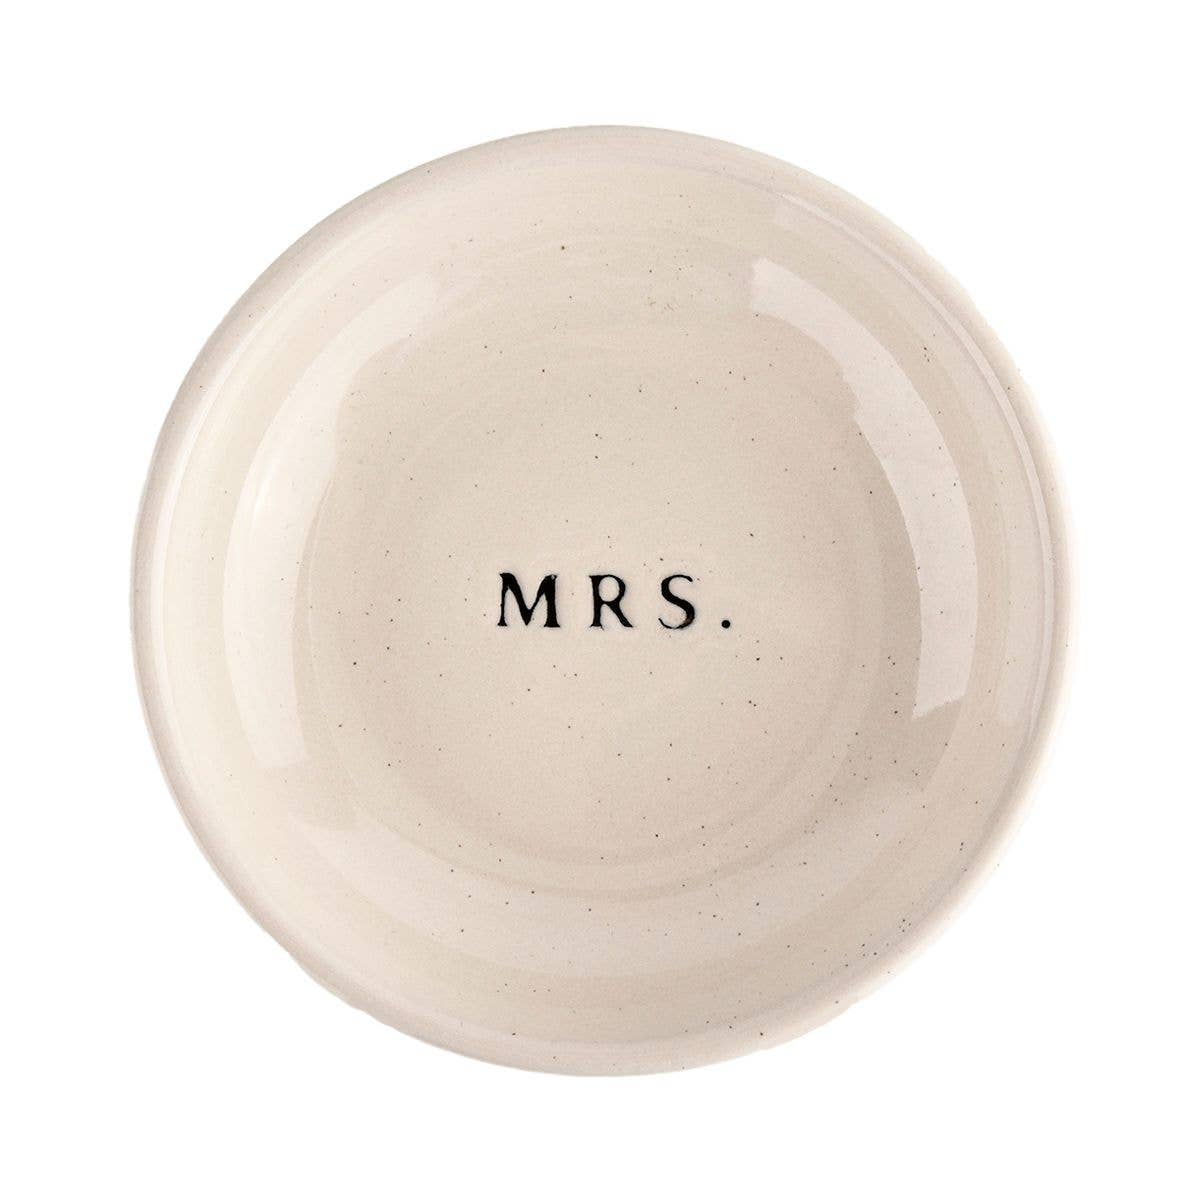 Mrs. Jewelry Dish - Cream Stoneware - 4x4"